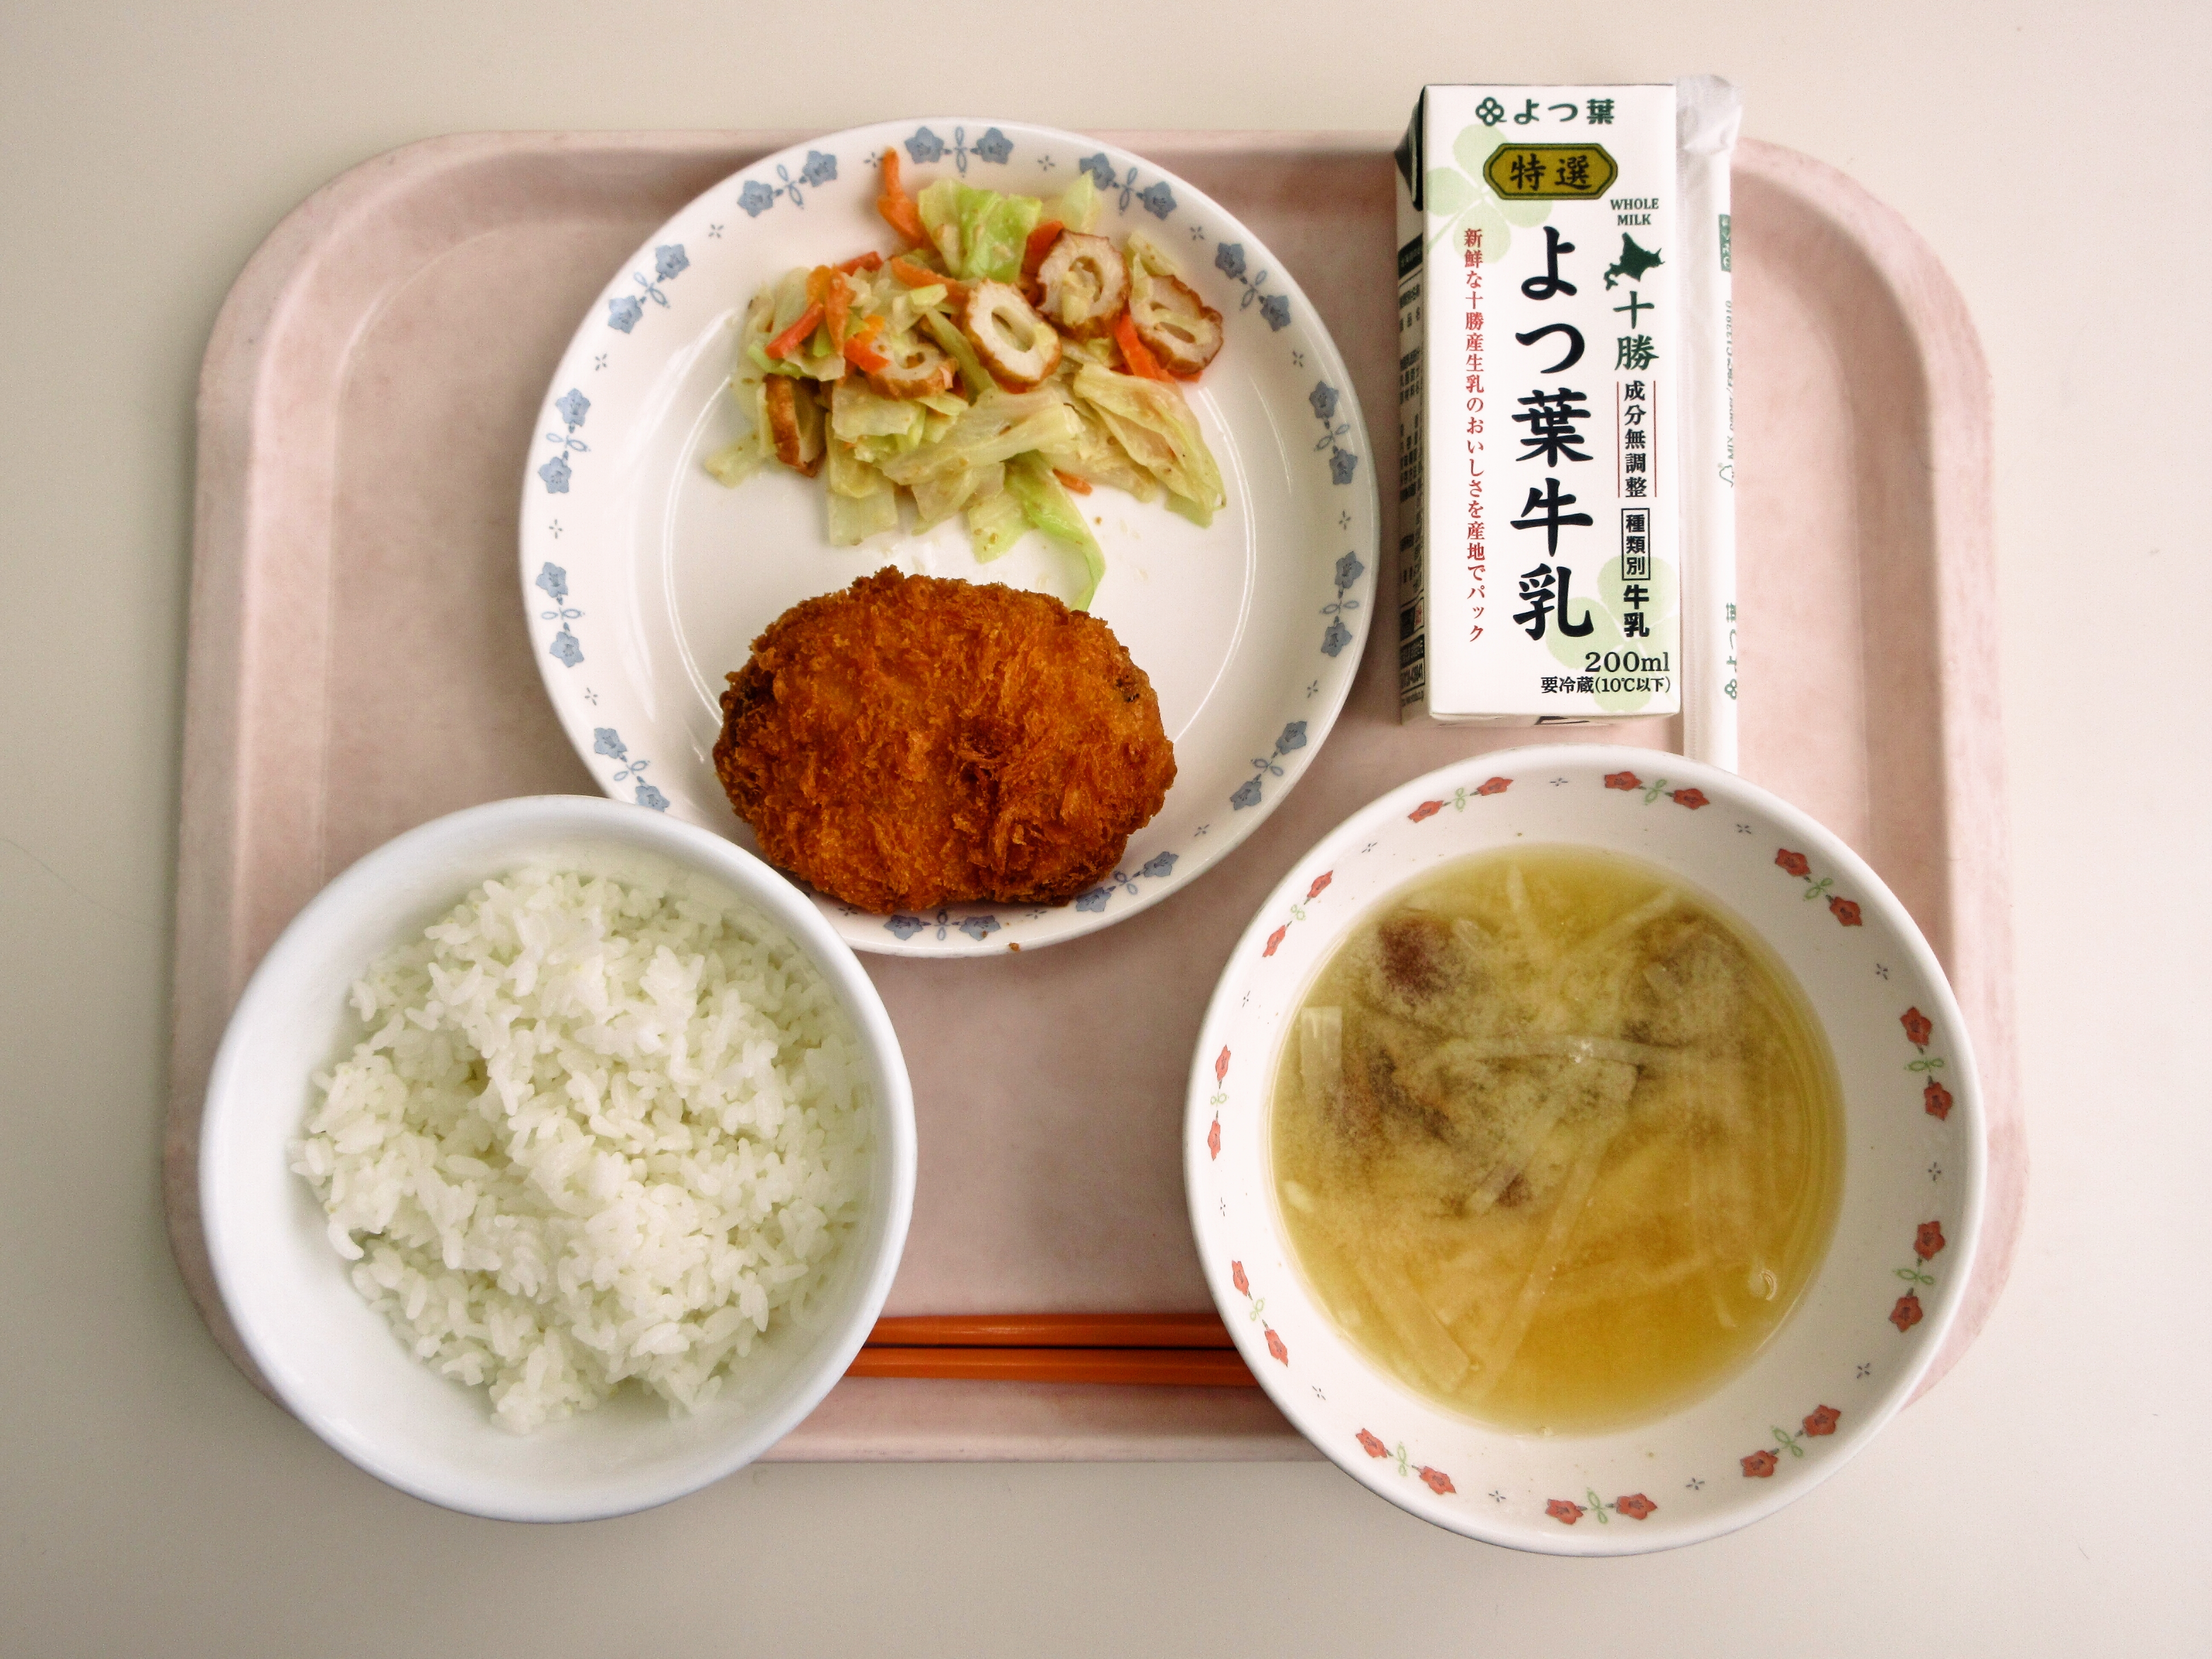 ごはん、みそ汁（大根・なめこ）、士幌の野菜コロッケ、キャベツのごまドレ和え、牛乳